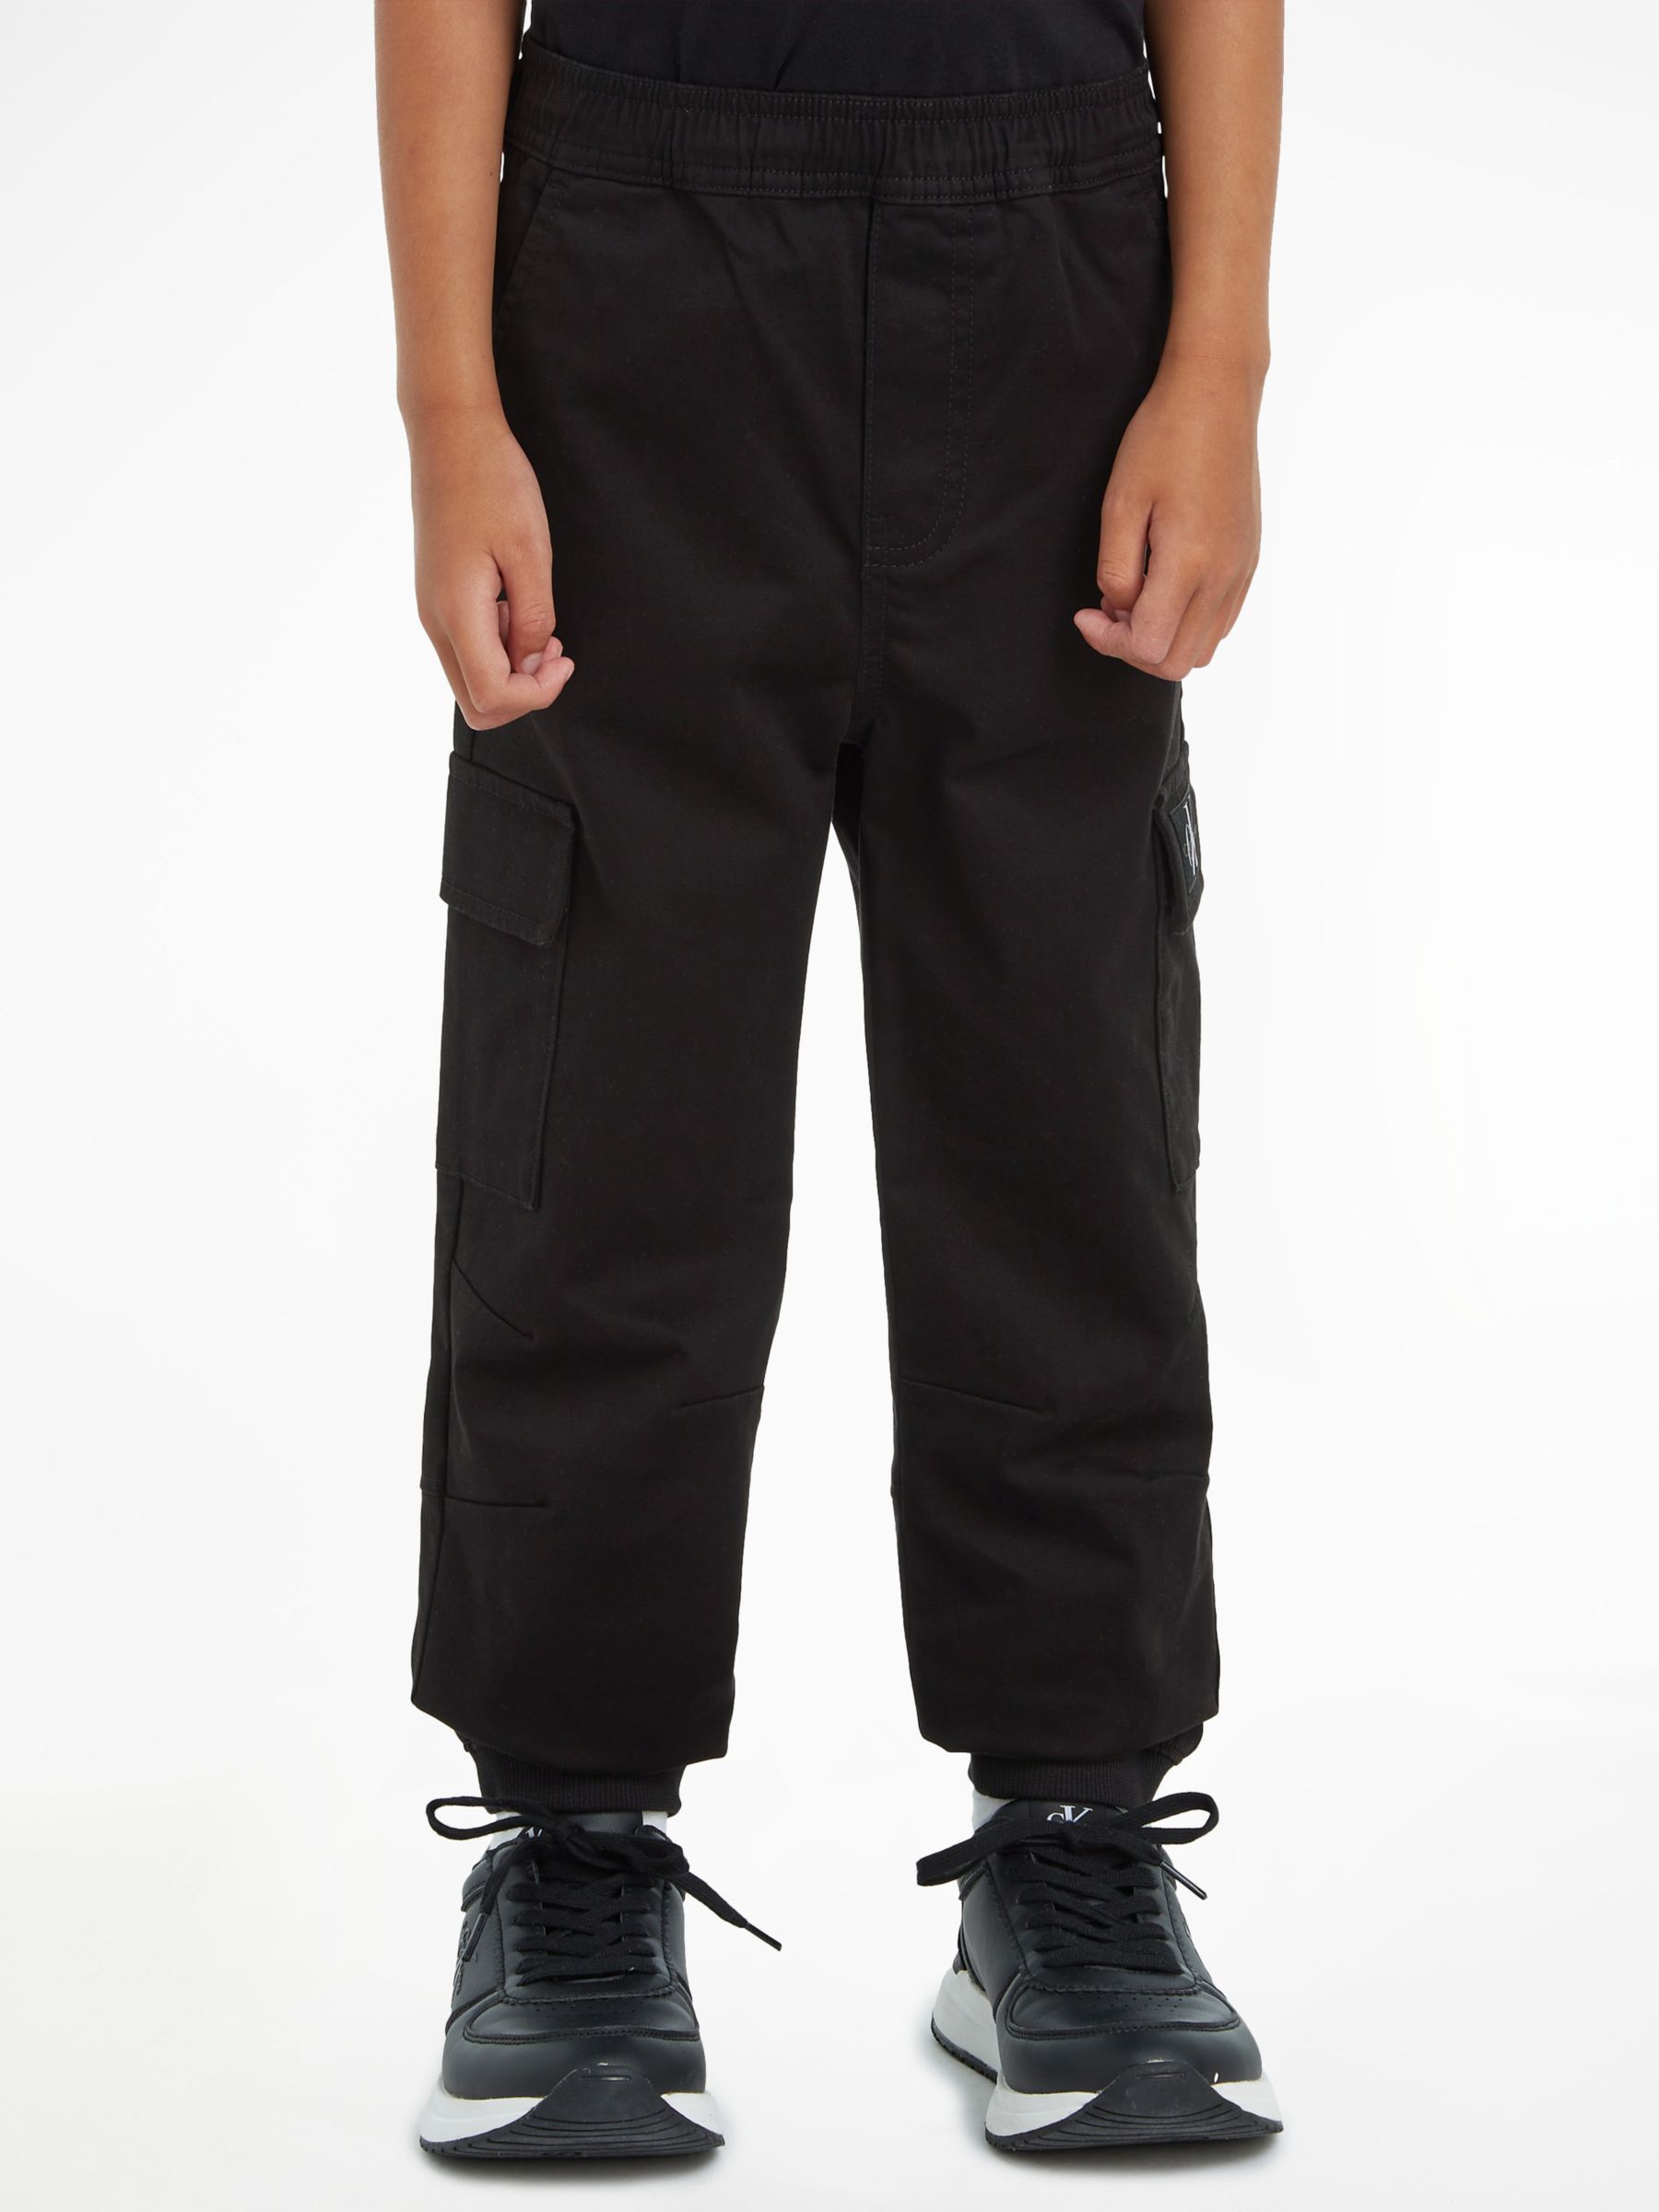 Calvin Klein Kids' Cargo Trousers, CK Black at John Lewis & Partners